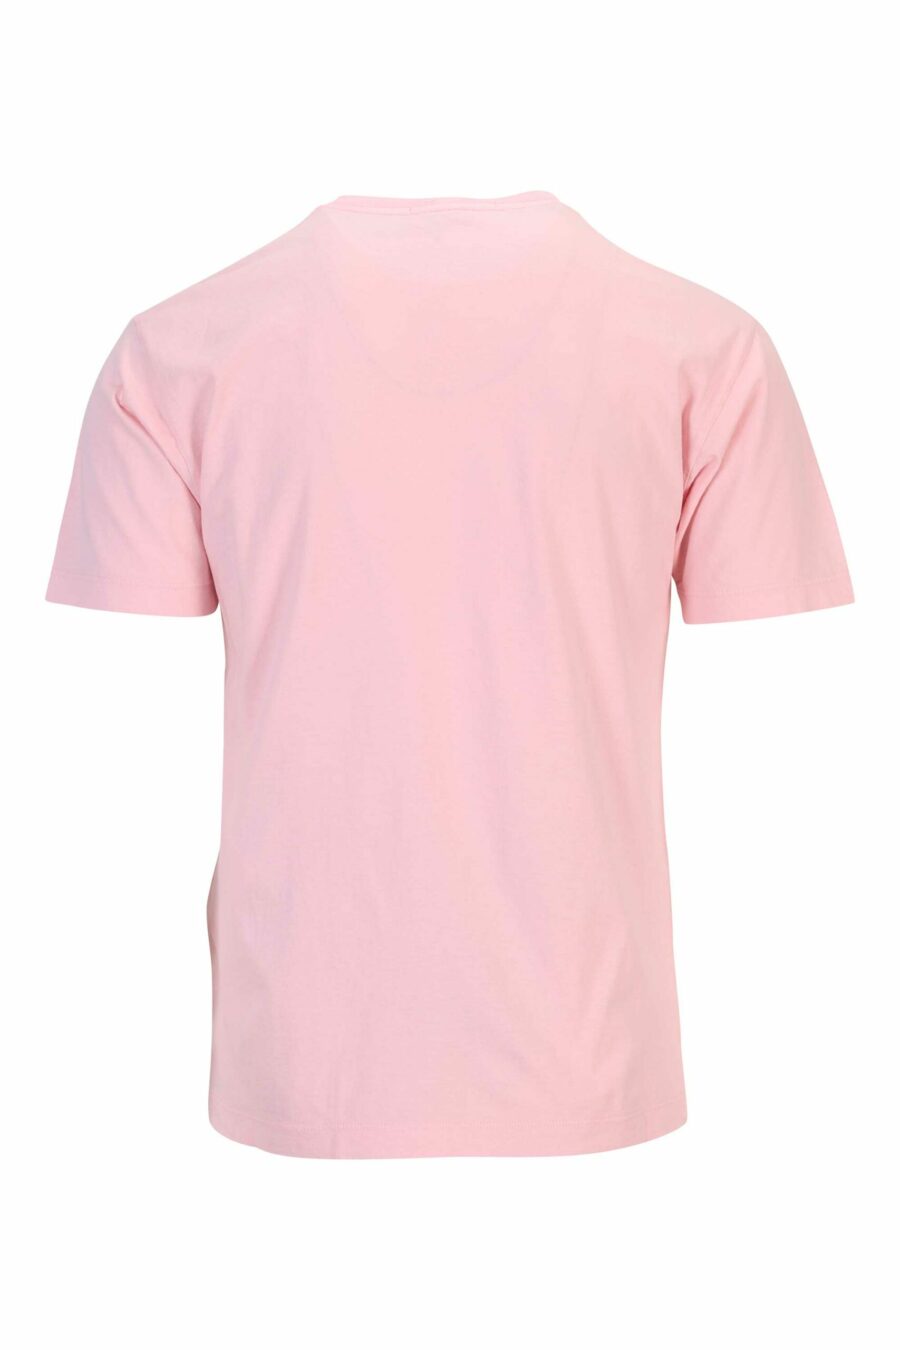 Camiseta rosa con estampado logo brújula centrado - 8052572903991 1 scaled